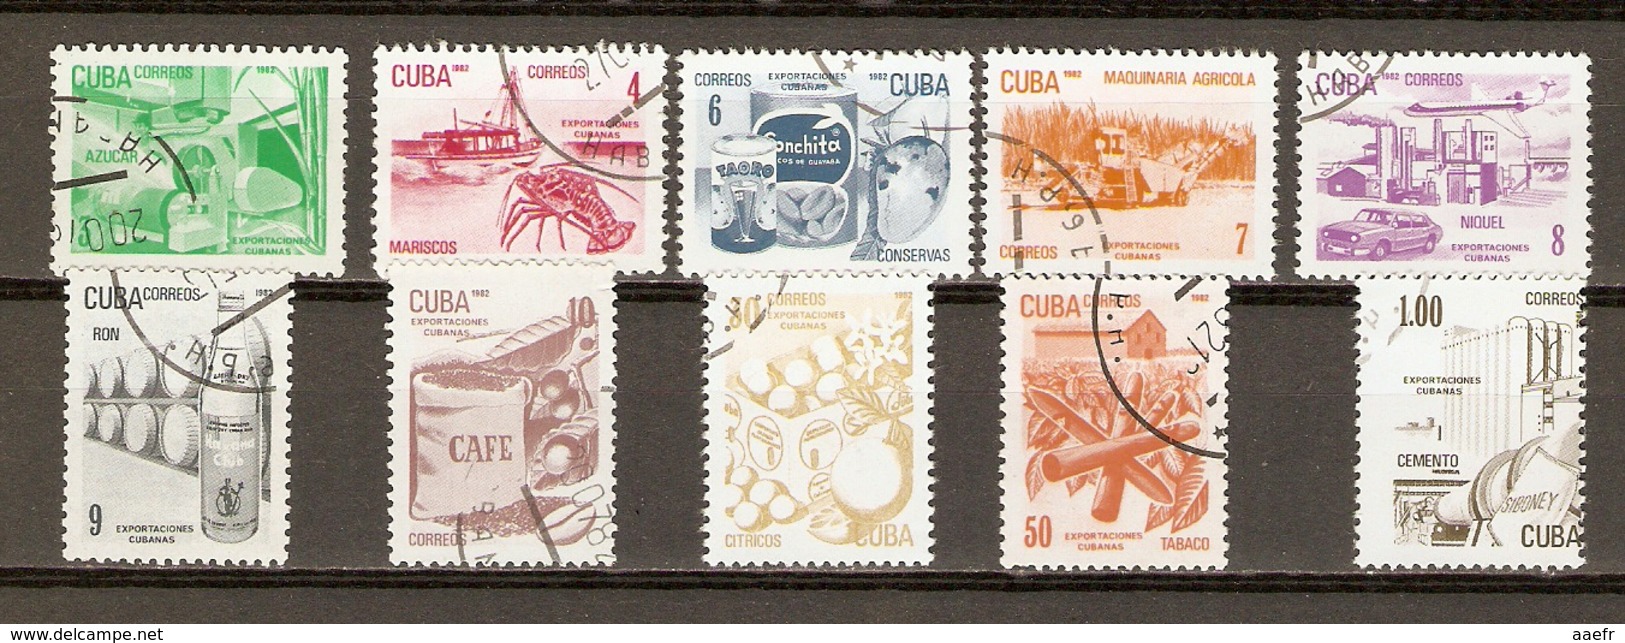 Cuba 1982 - Exports - Série Complète - 2484/93 - Crustacés - Rhum - Café - Nickel - Tabac - Agrumes - Matériel Agricole - Oblitérés